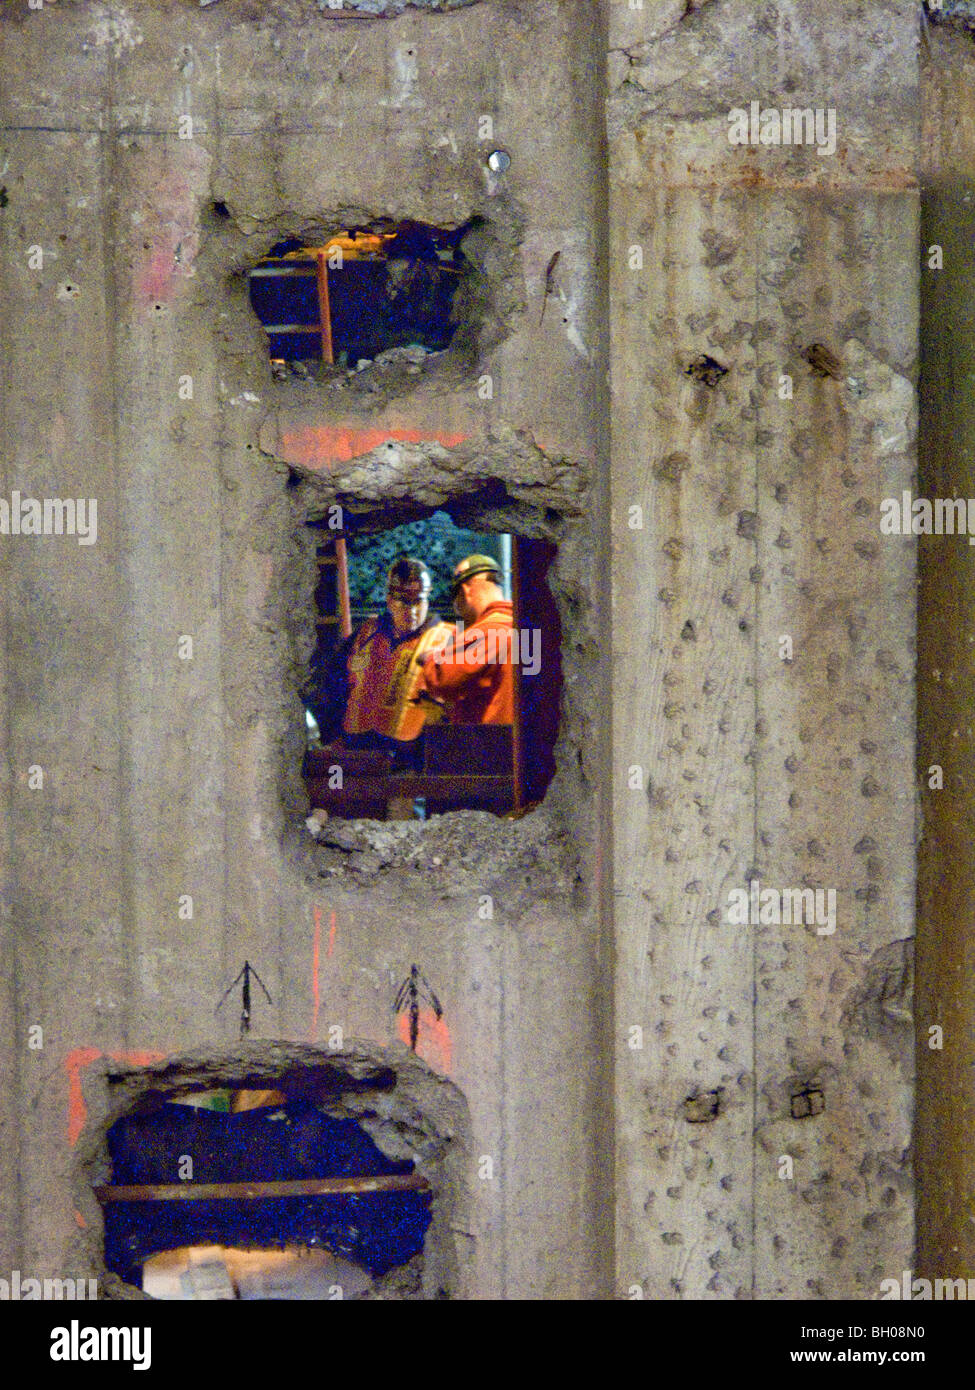 Intravisto attraverso un foro in una parete di costruzione, due New York City metropolitana operai conferiscono. Nota attrezzatura di sicurezza. Foto Stock